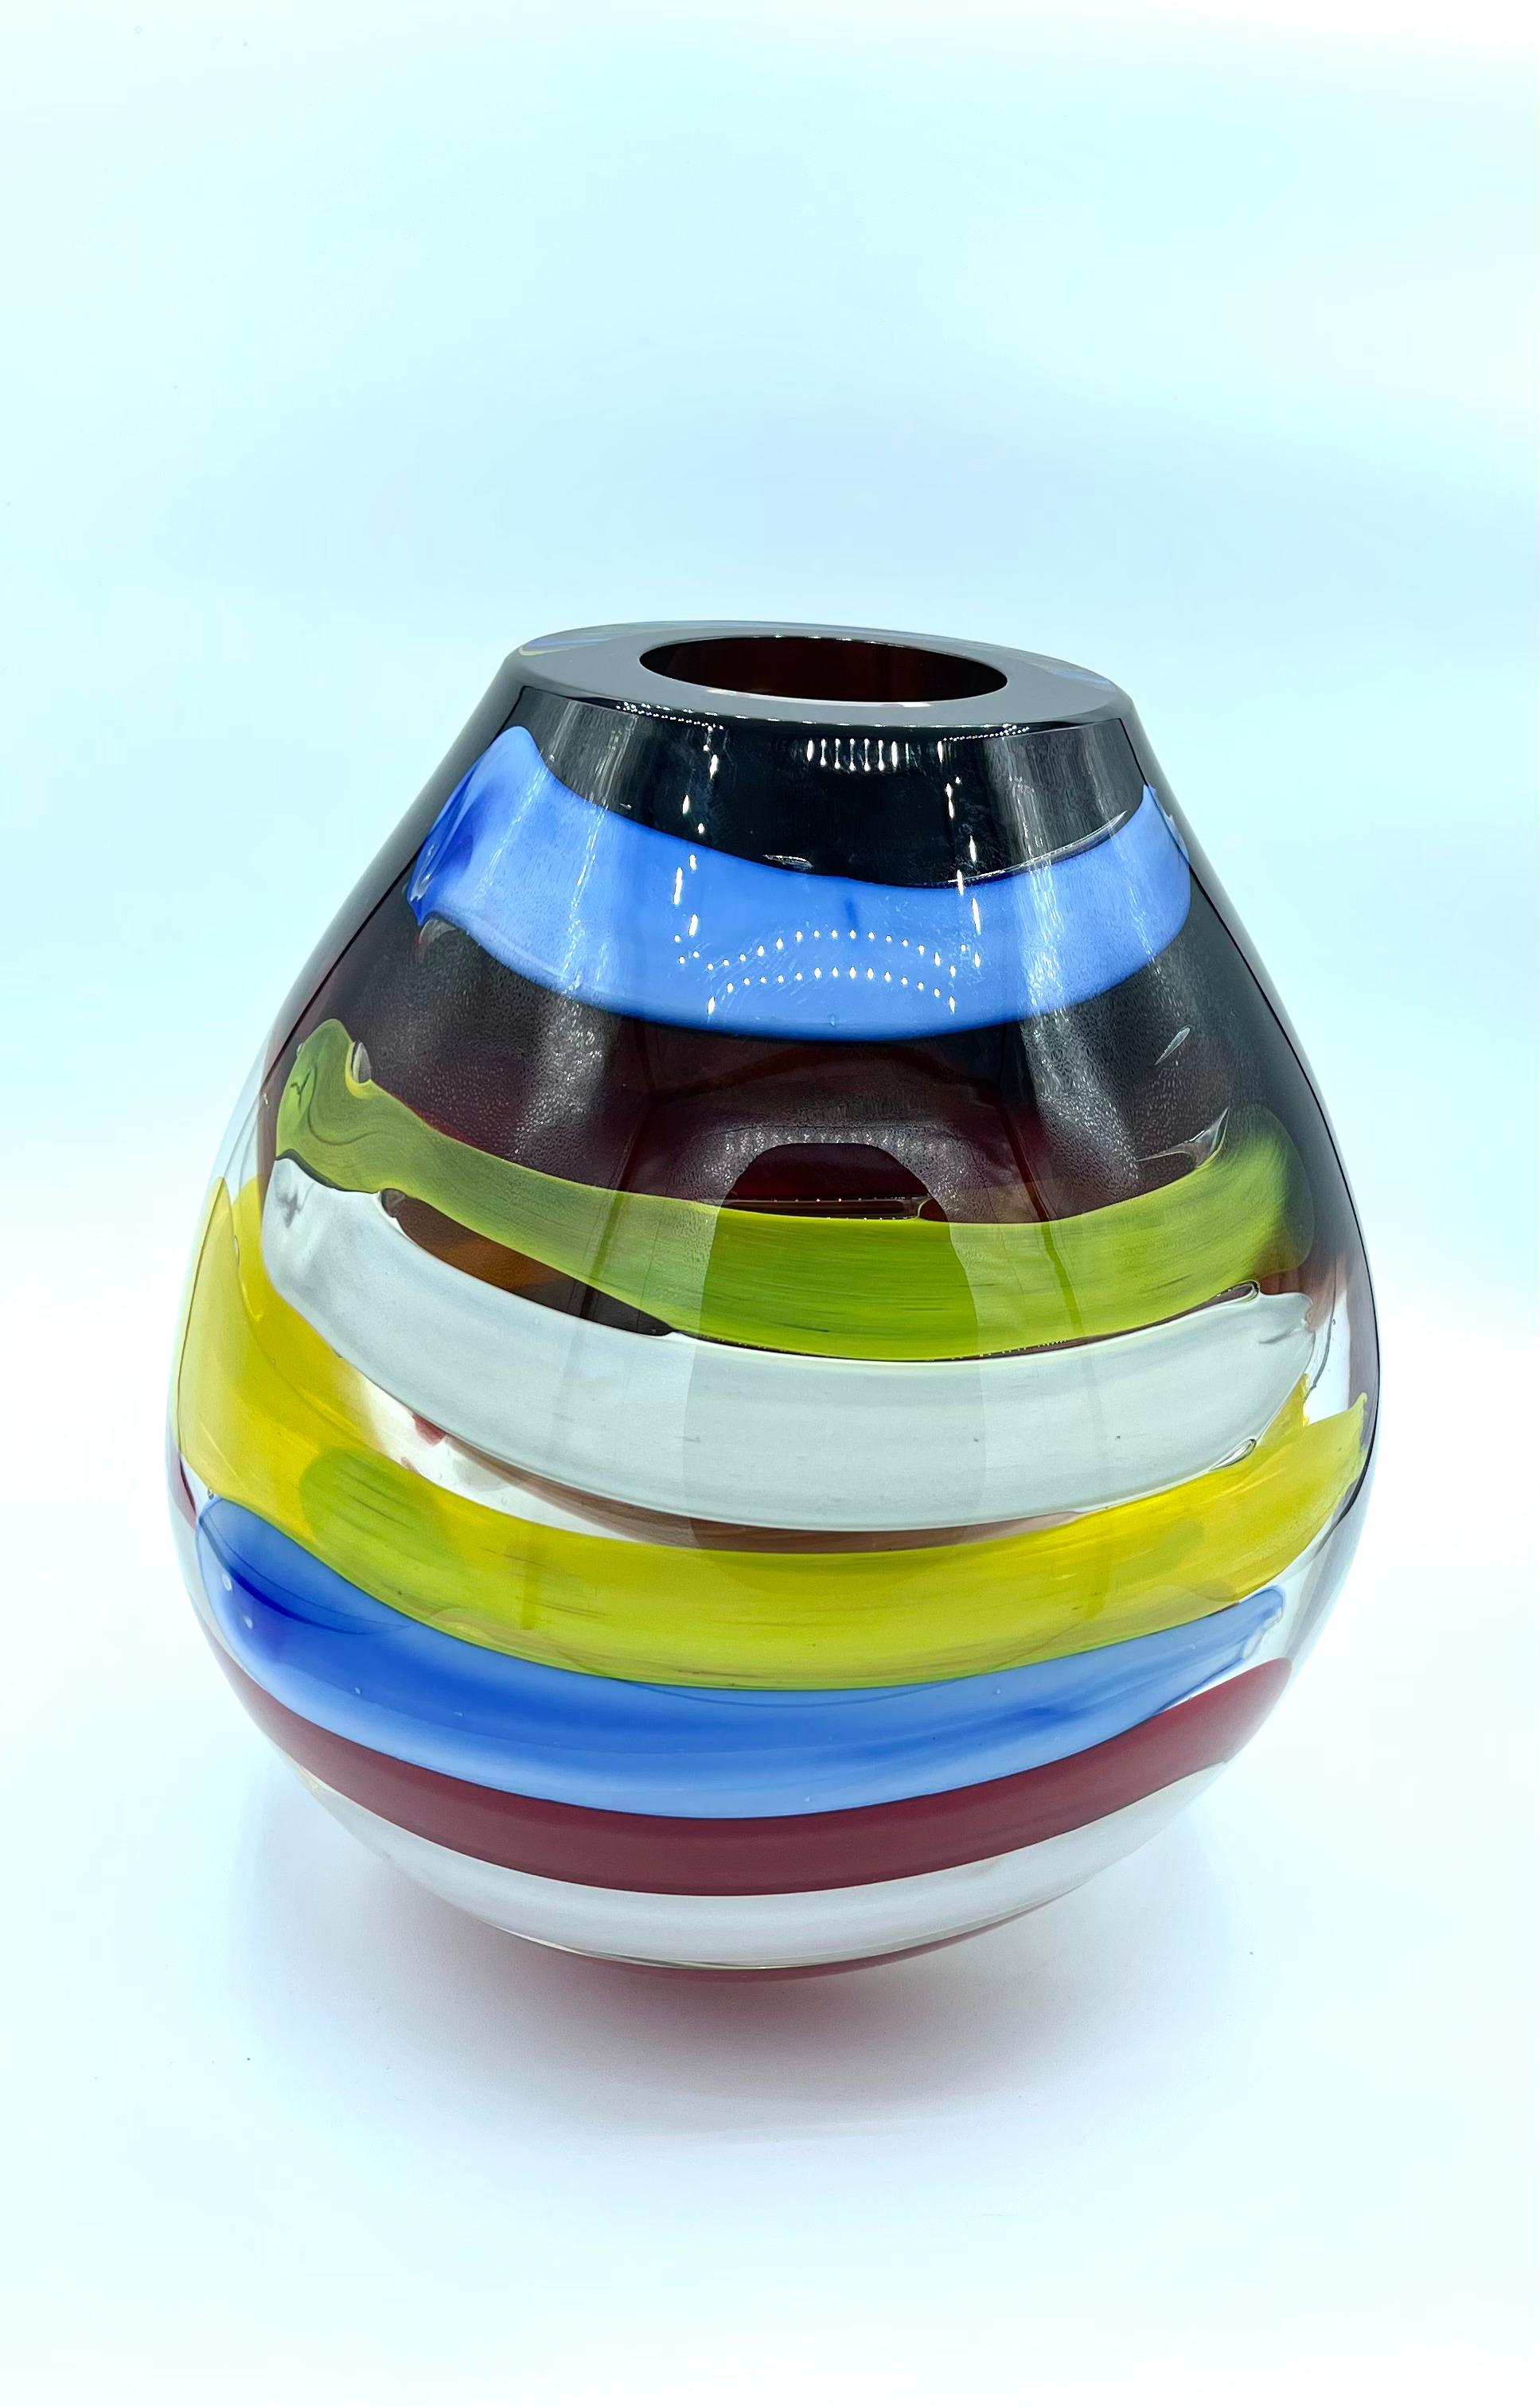 Diese farbenfrohe Vase ist sowohl in ihrer Form als auch in ihren Farben ein Unikat. Zu seiner Herstellung müssen verschiedene Schichten aus Murano-Glas mit der Incalmo-Technik übereinandergelegt werden, einer Glasbearbeitungsmethode, die die